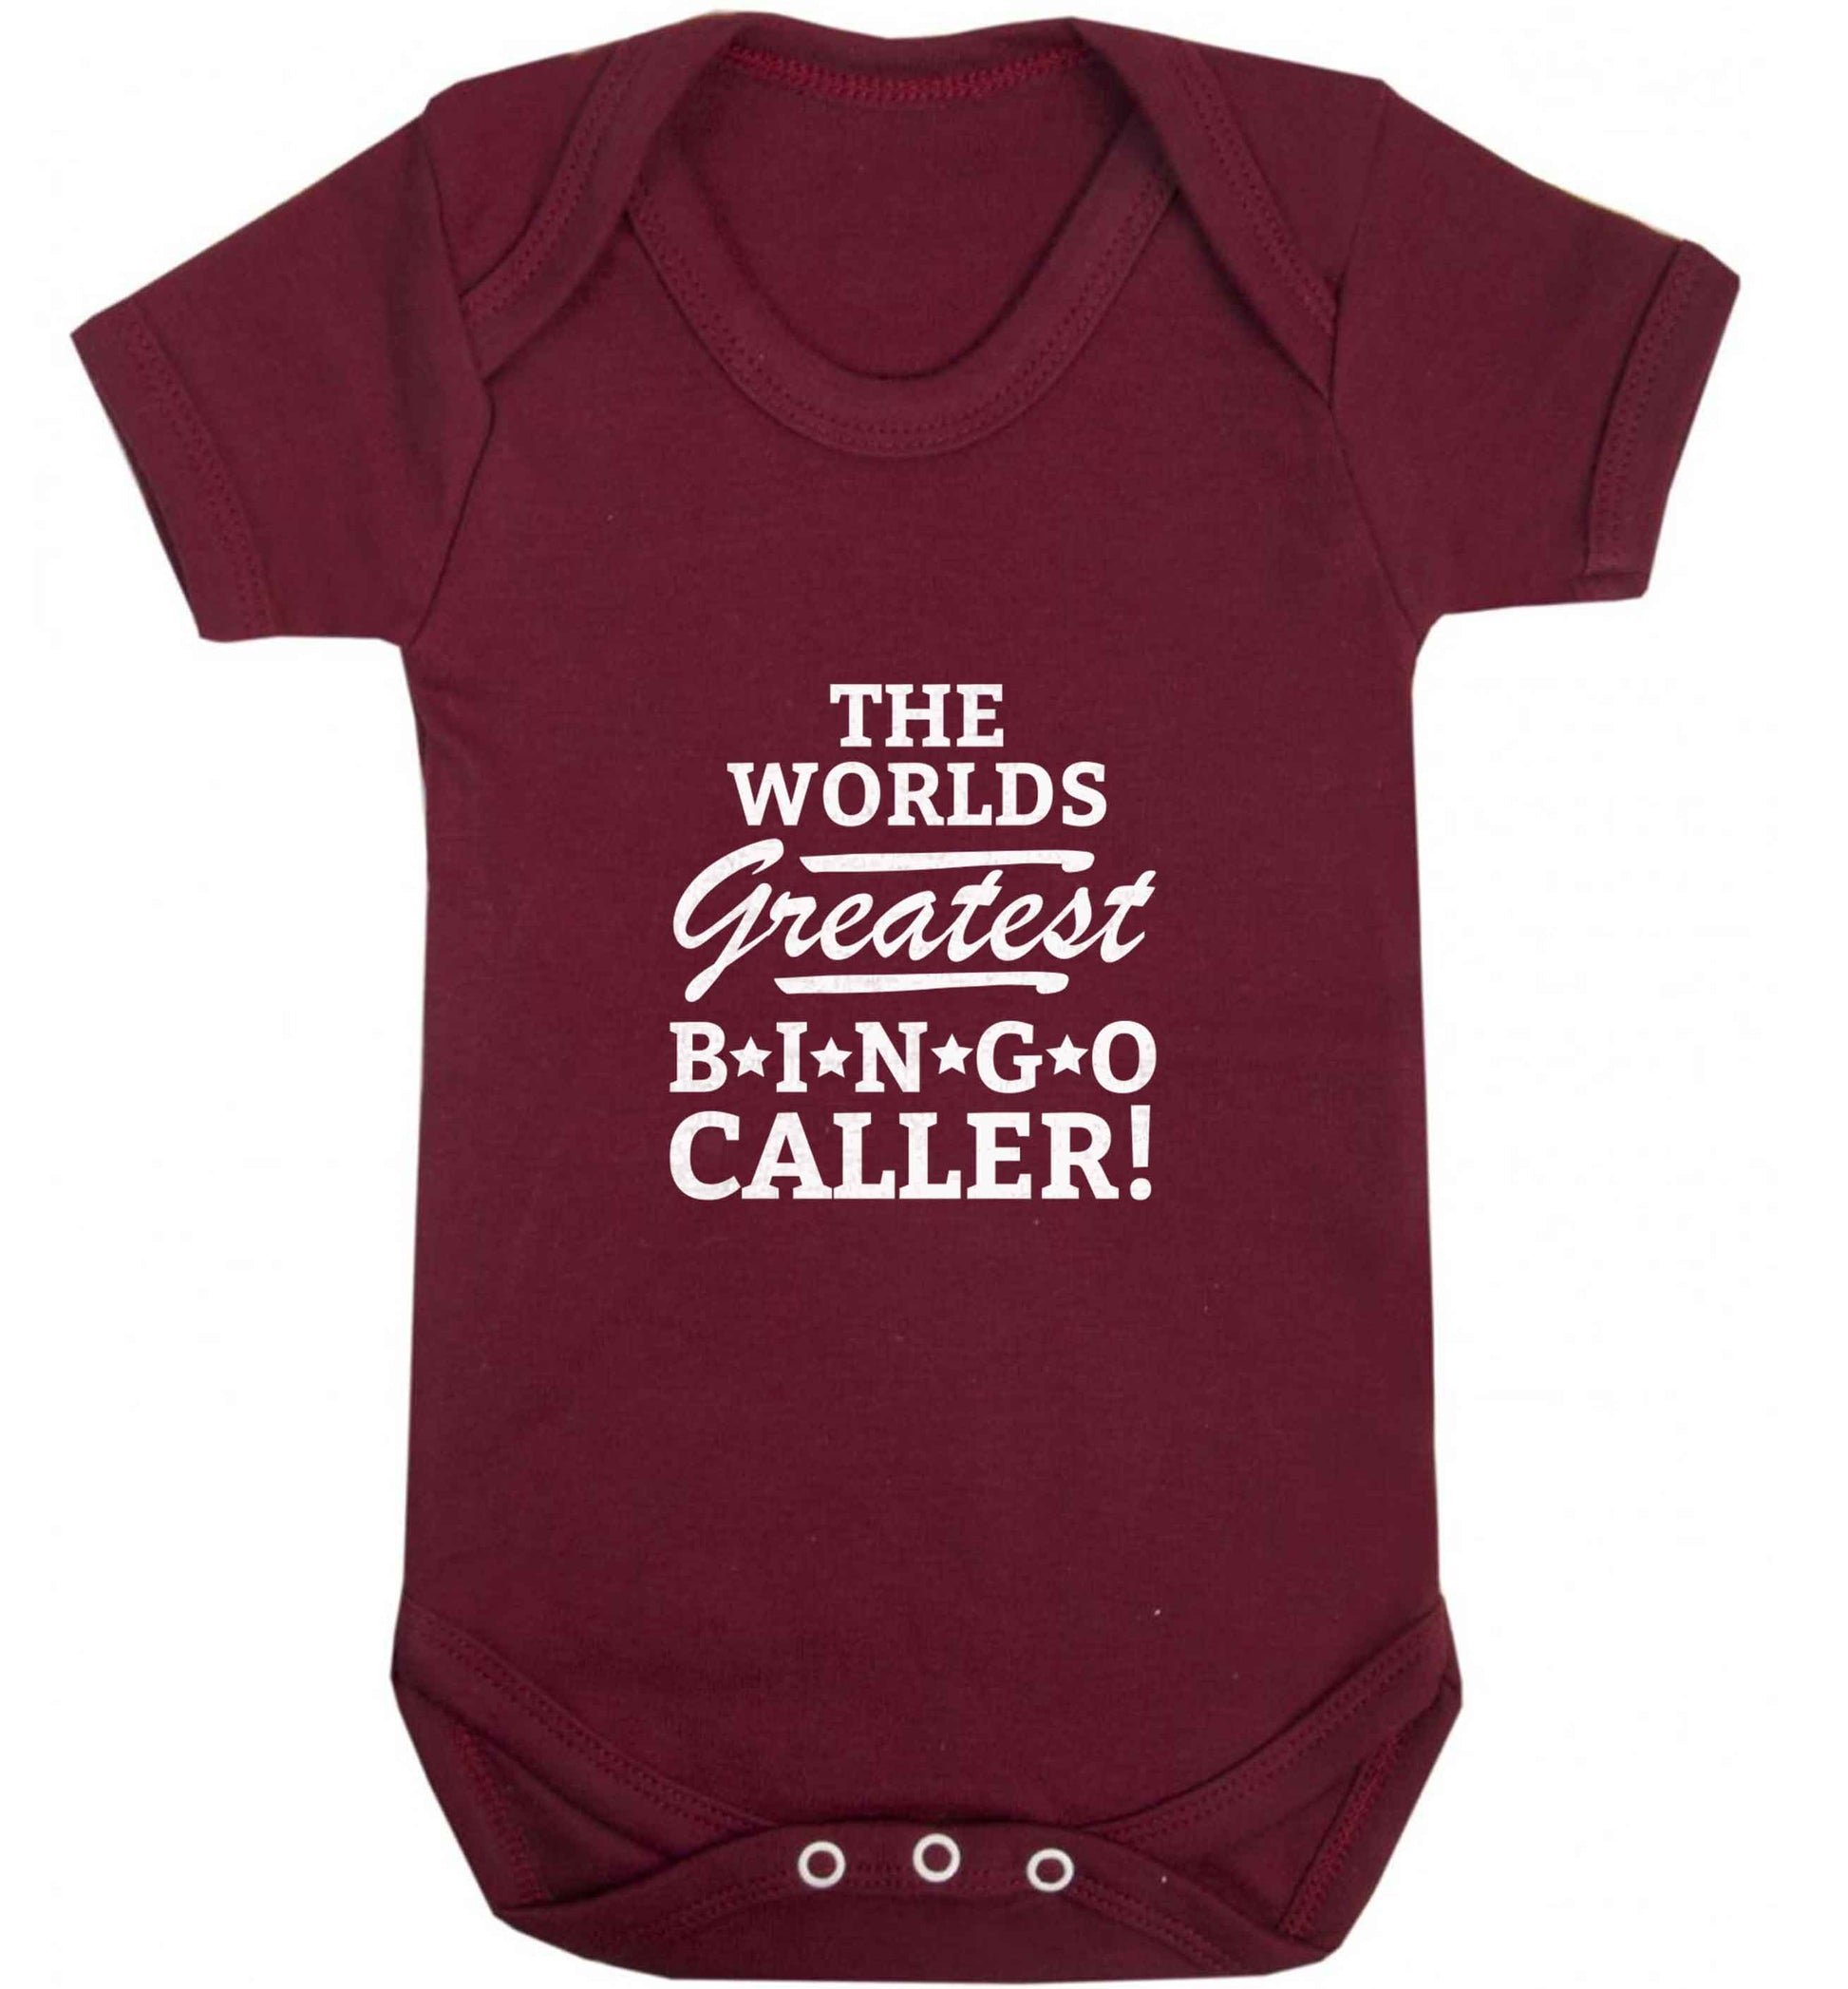 Worlds greatest bingo caller baby vest maroon 18-24 months